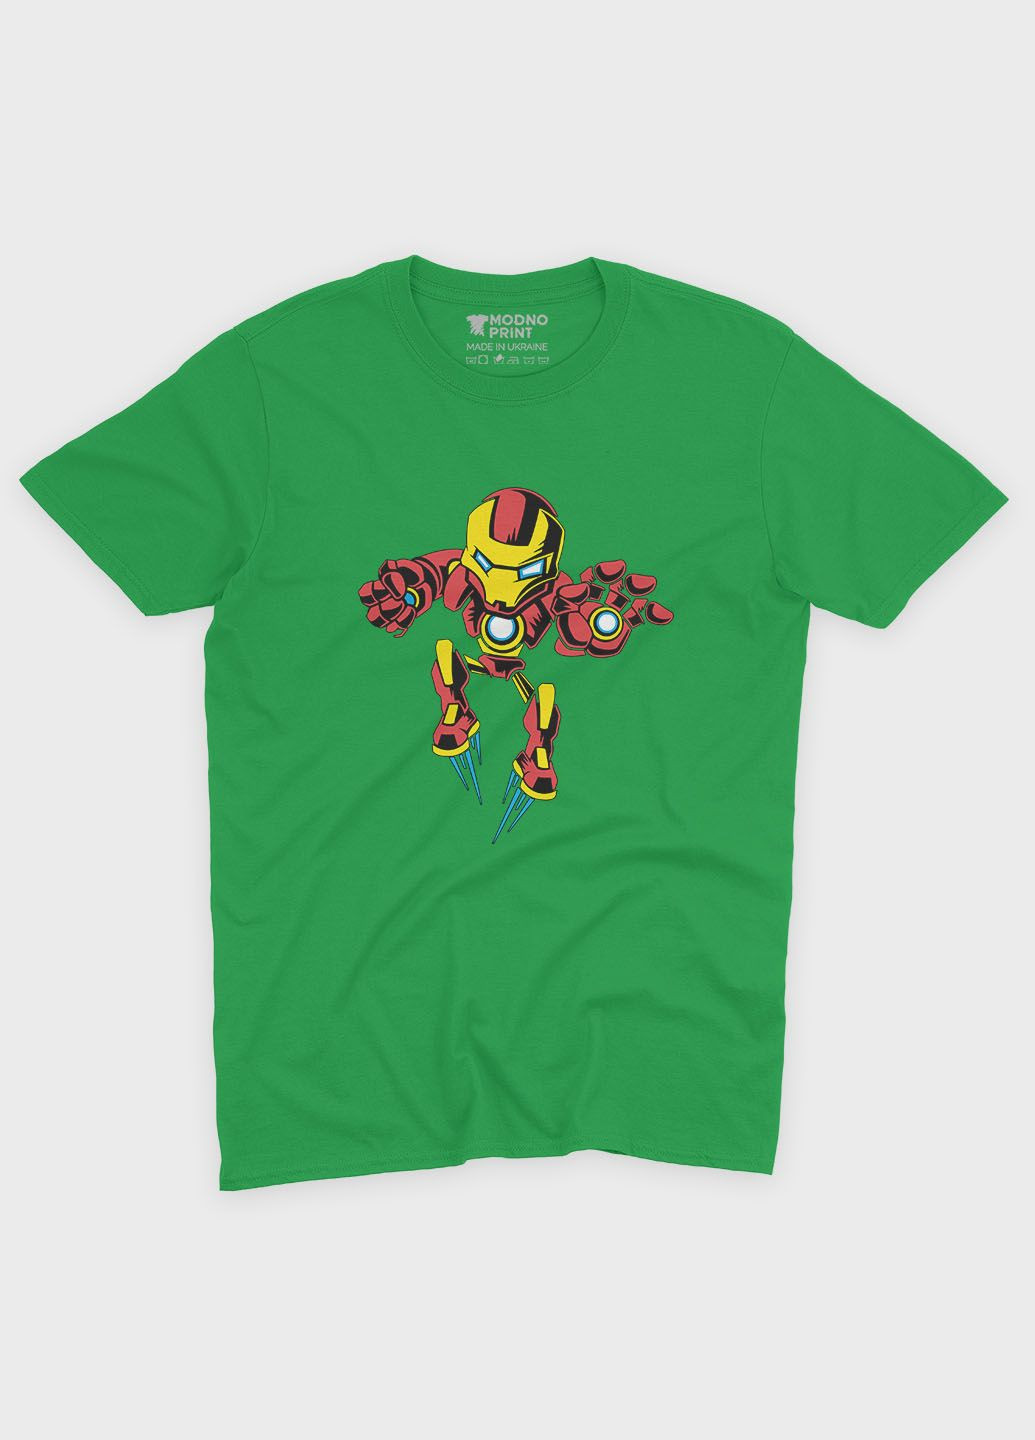 Зеленая демисезонная футболка для девочки с принтом супергероя - железный человек (ts001-1-keg-006-016-025-g) Modno